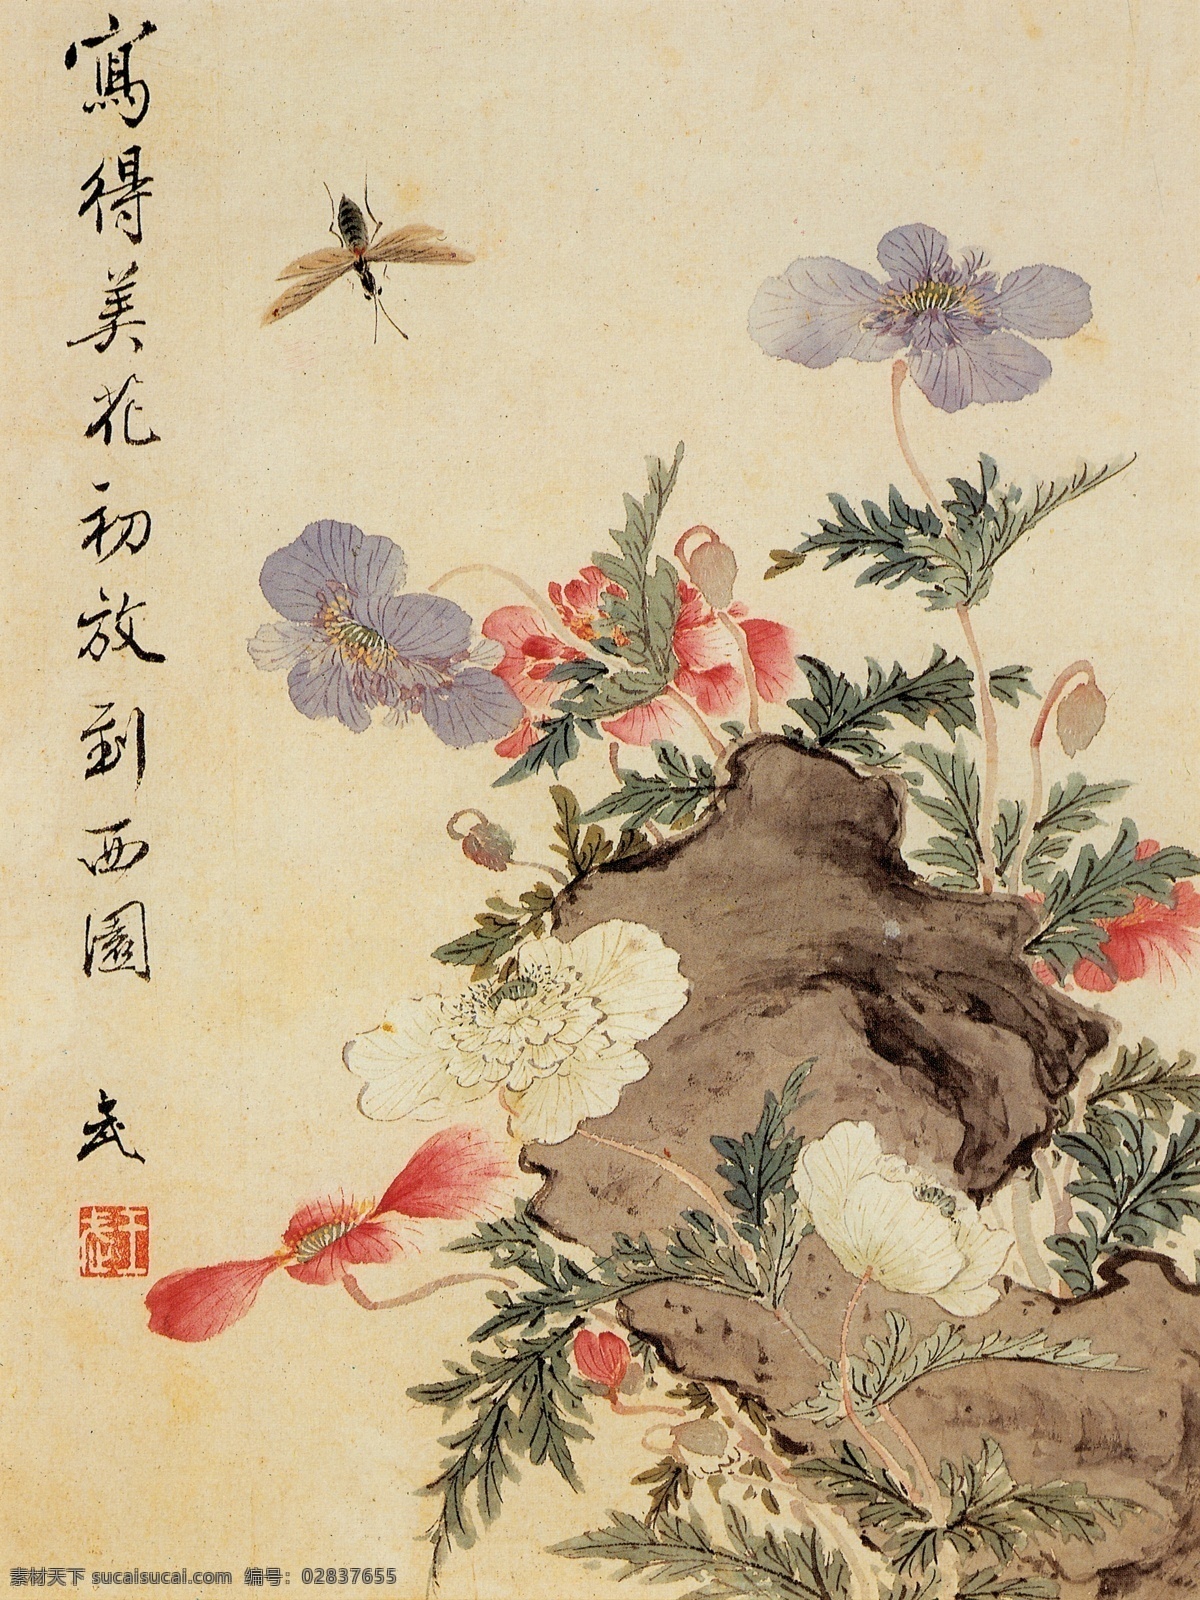 花卉 国画 蜜蜂 写意画 红花 白花 紫花 古风 文化艺术 绘画书法